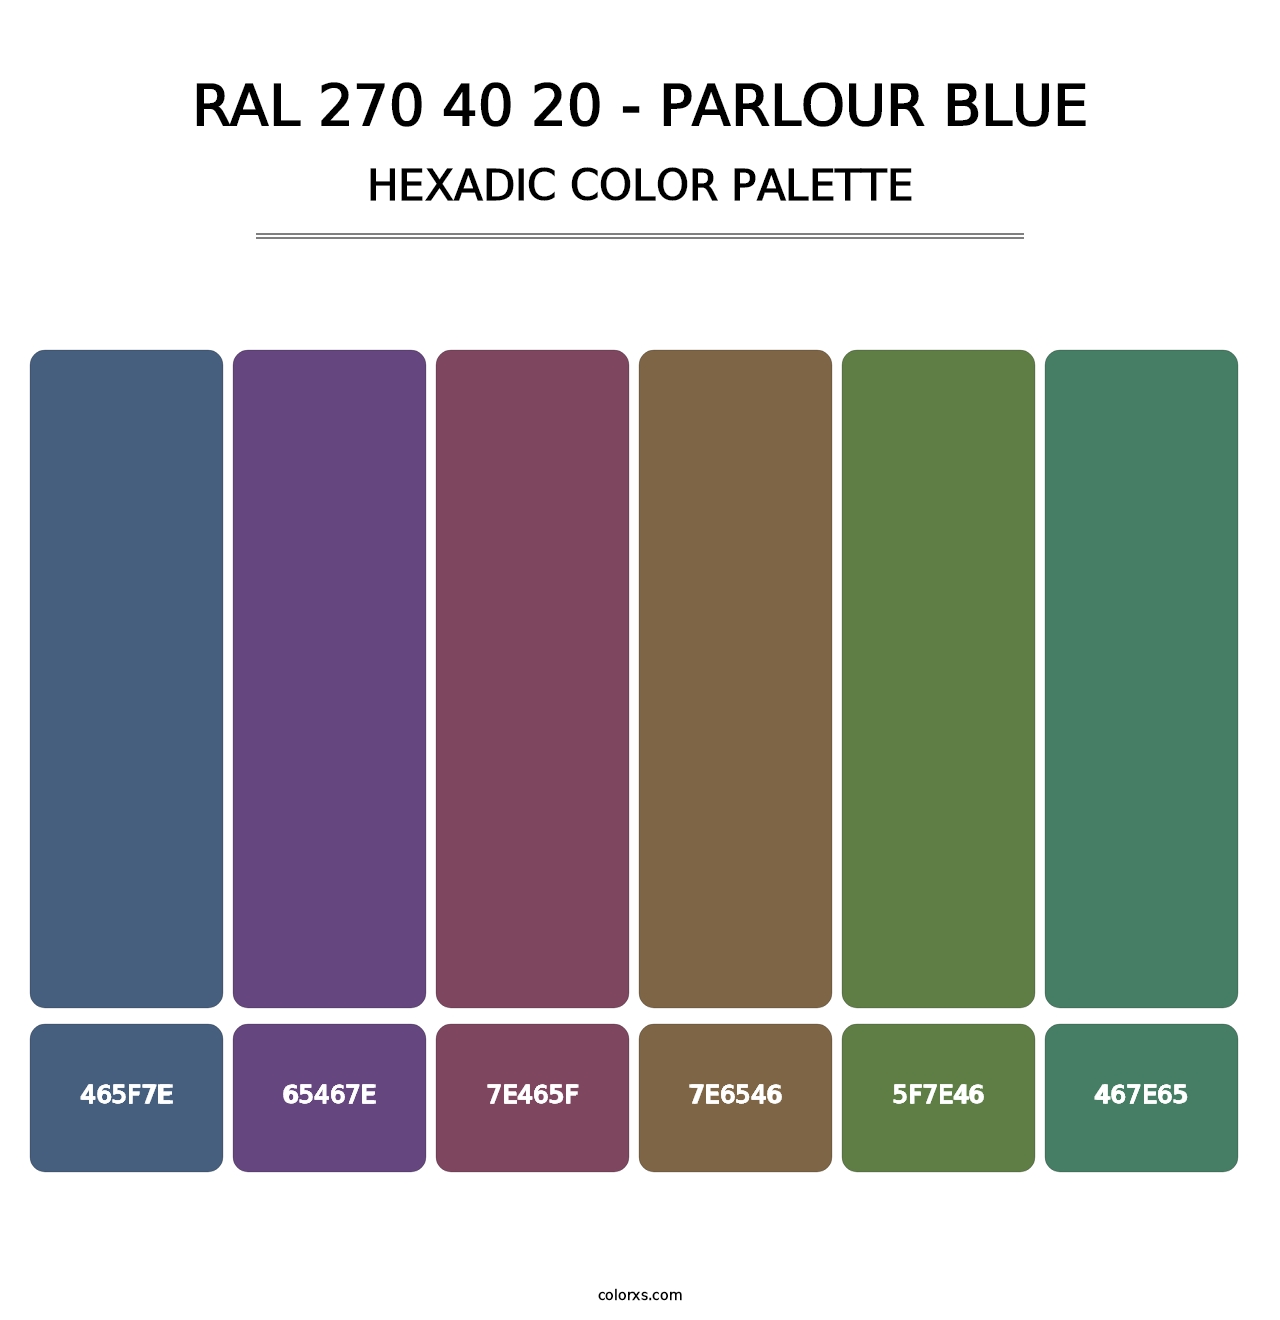 RAL 270 40 20 - Parlour Blue - Hexadic Color Palette